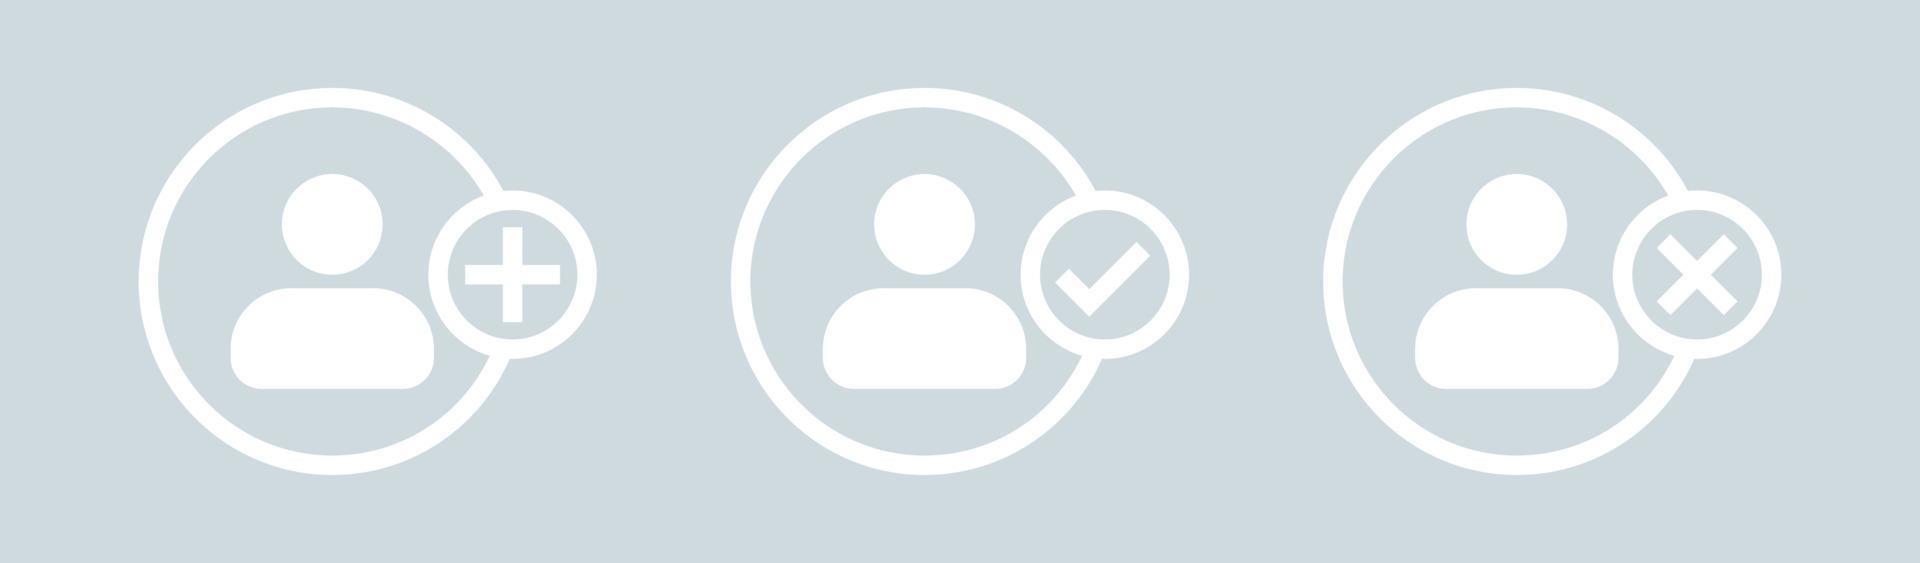 aggiungi l'icona del profilo utente nei colori bianchi. avatar profilo persona maschile con simbolo più. vettore